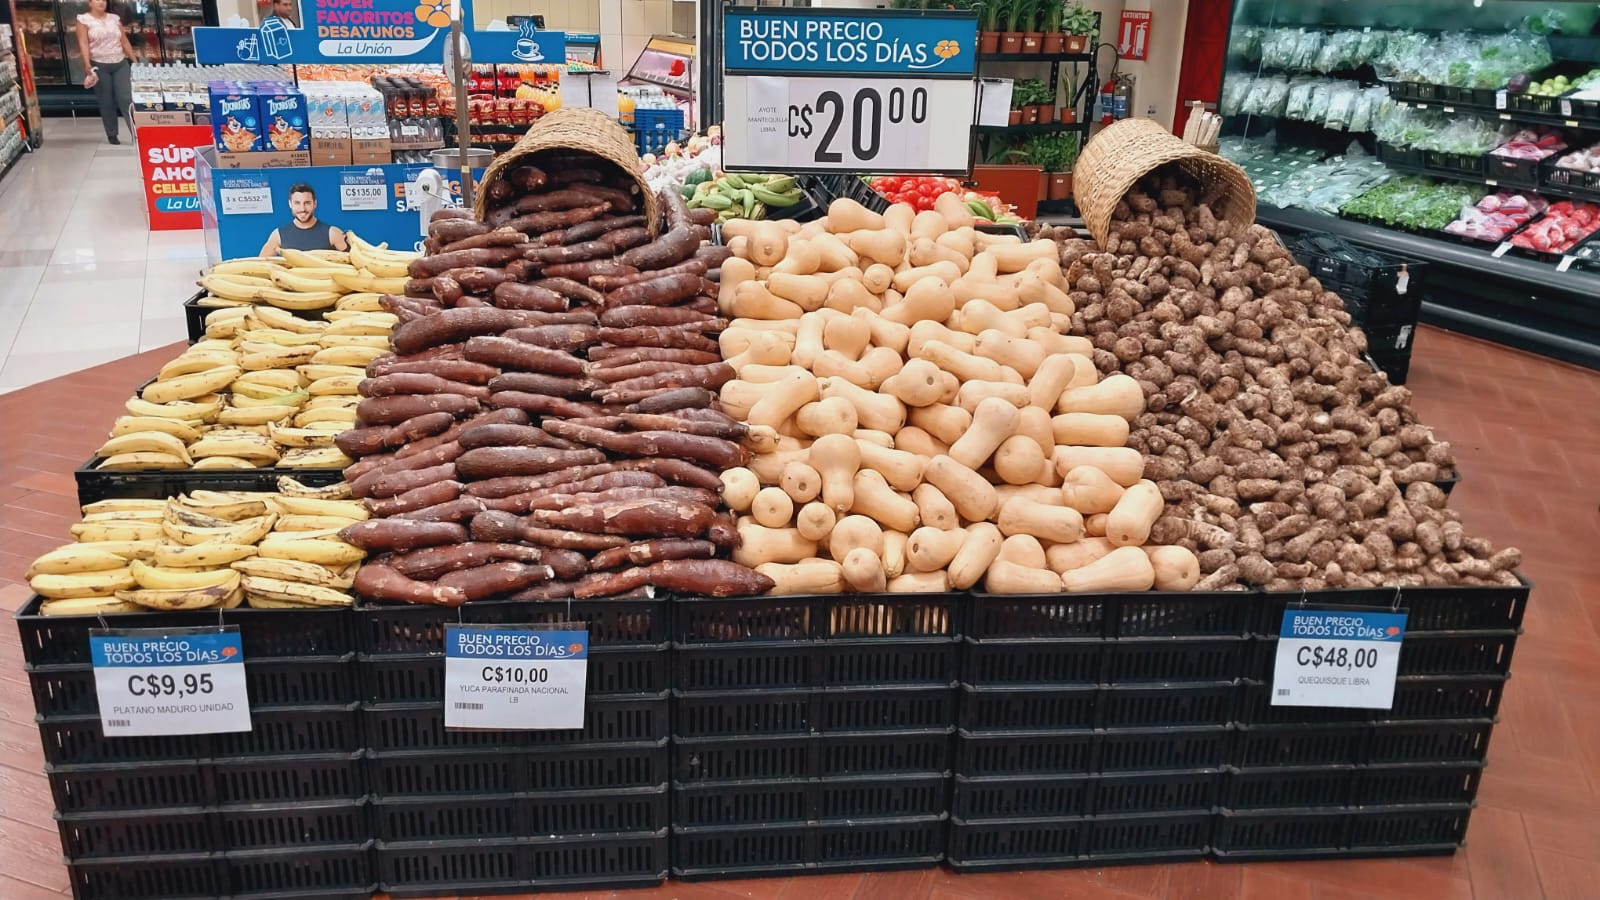 La pasión de un agricultor nicaragüense que impulsó el ayote de mantequilla en Walmart